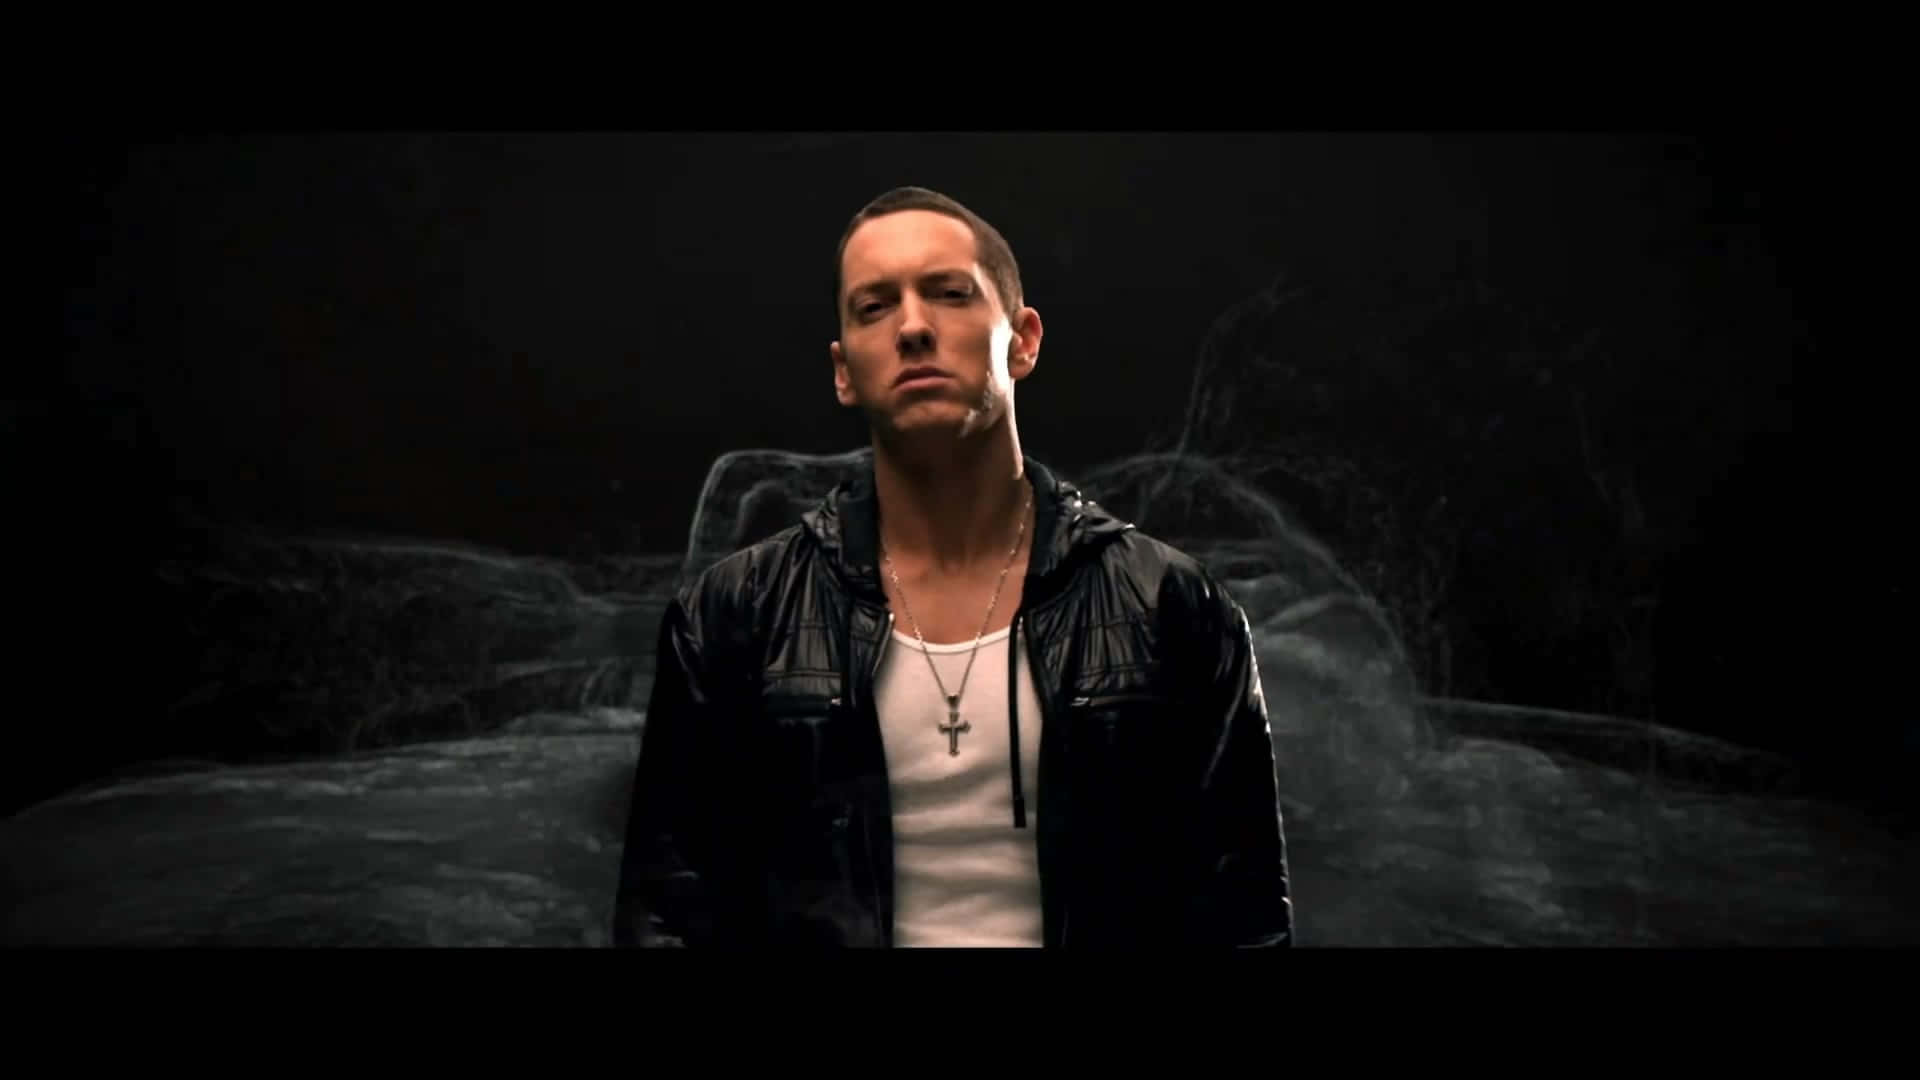 Eminemsi Esibisce Dal Vivo Sul Palco